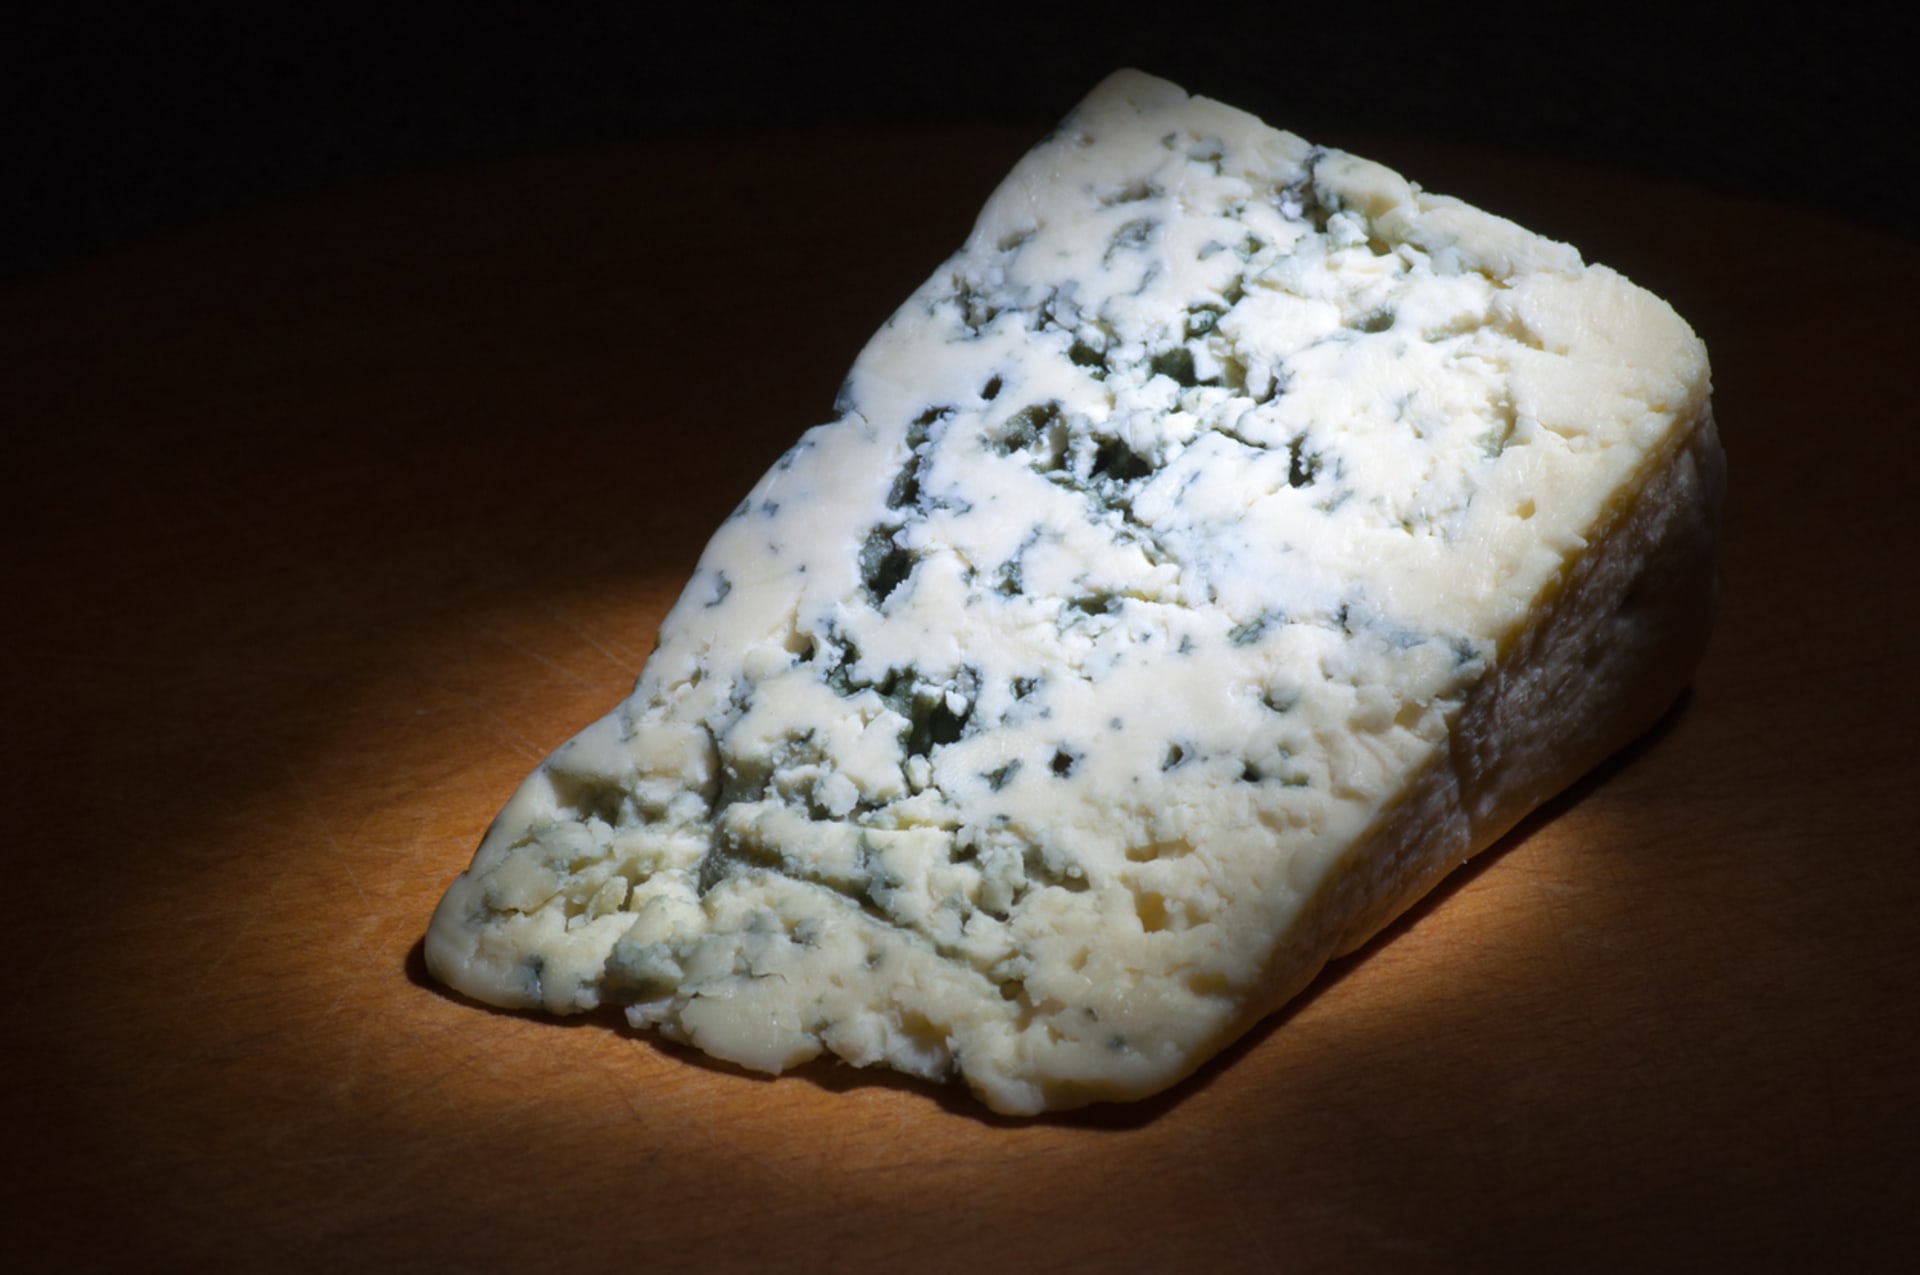 Plísňový sýr je oblíbená pochoutka.